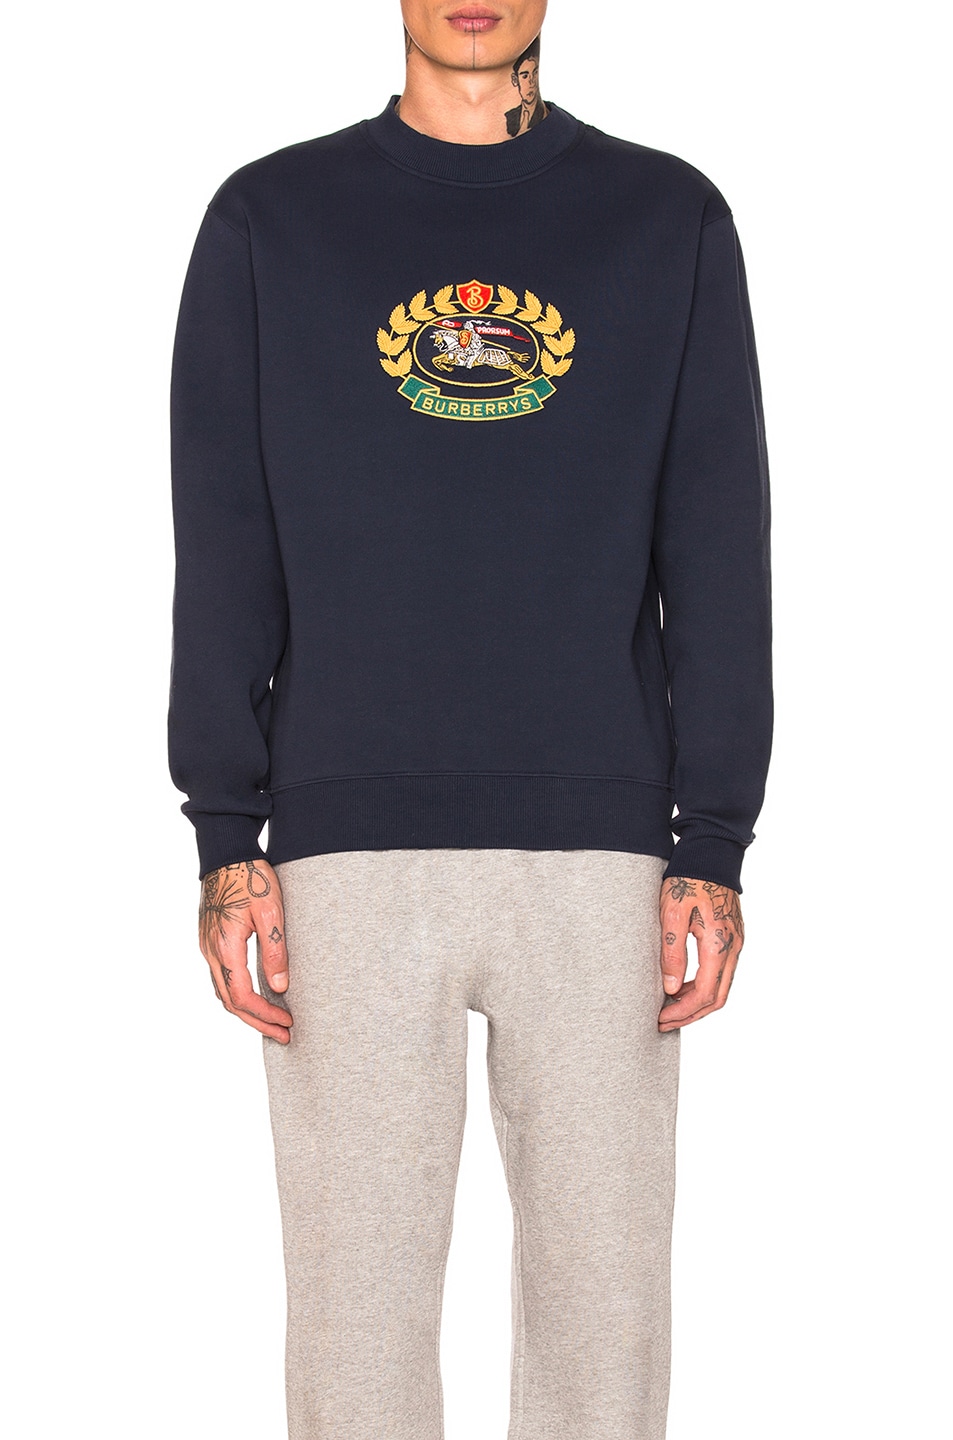 burberry navy sweatshirt